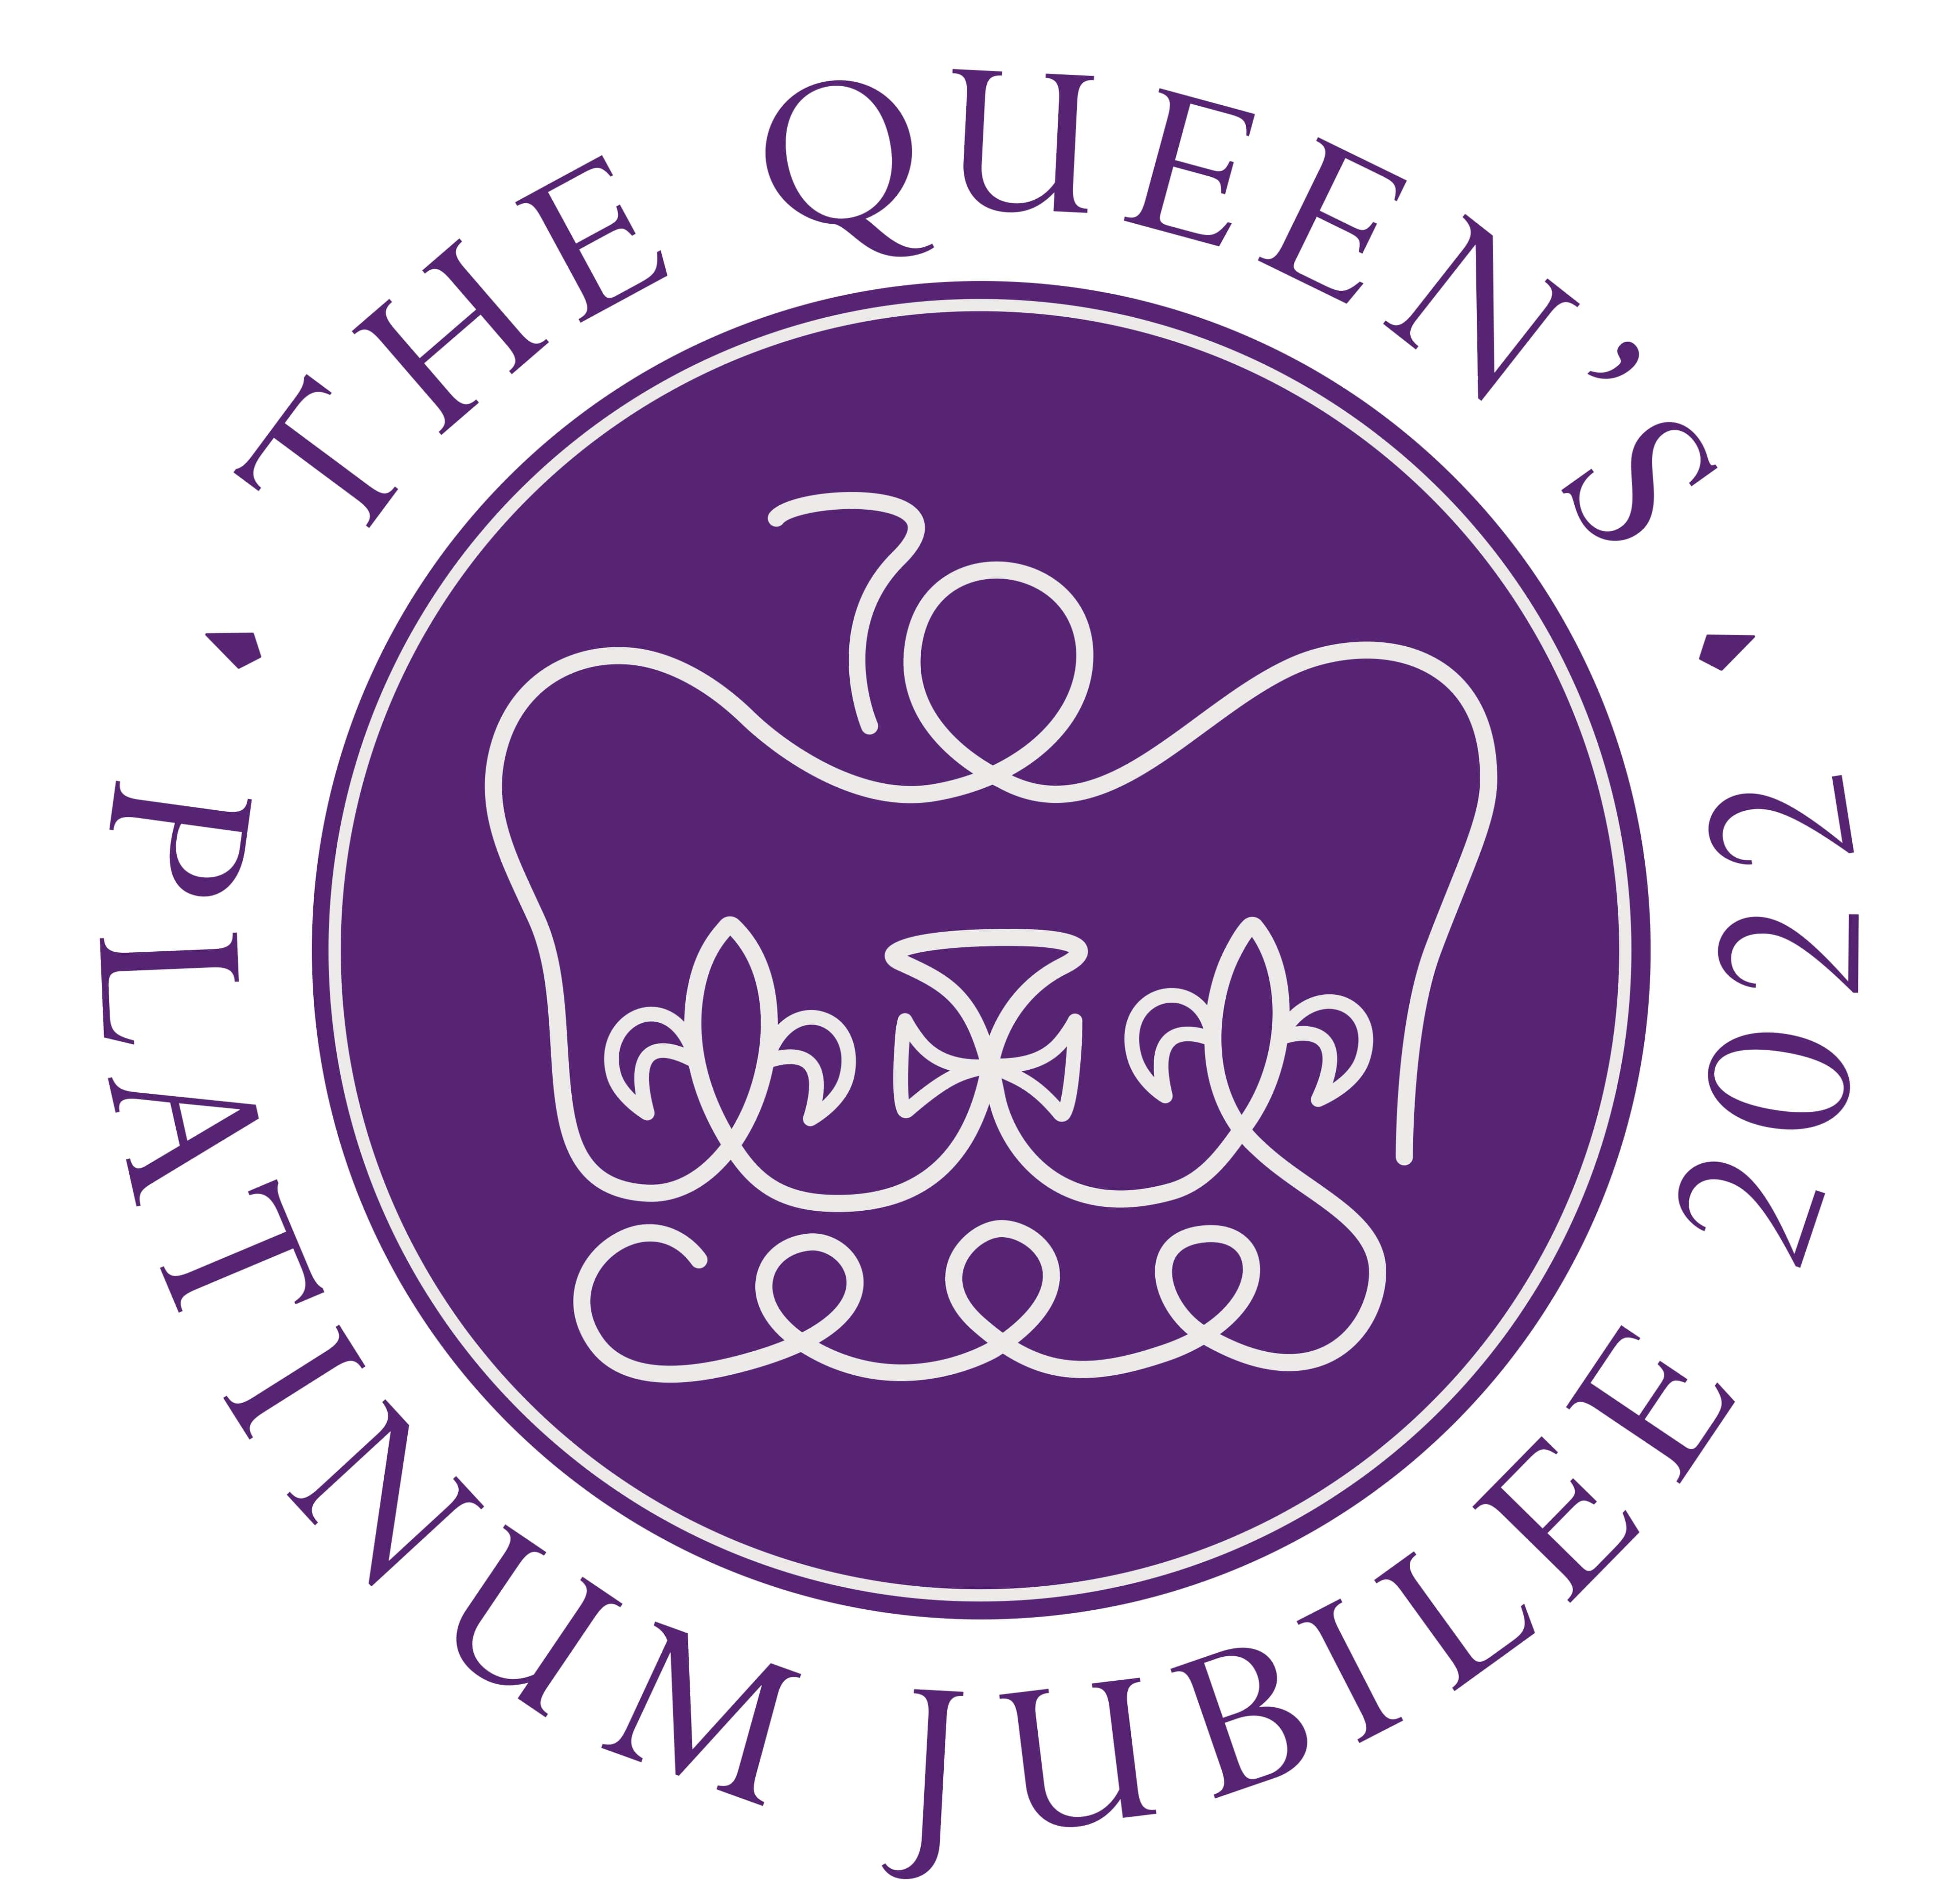 Queen's Platinum Jubilee logo